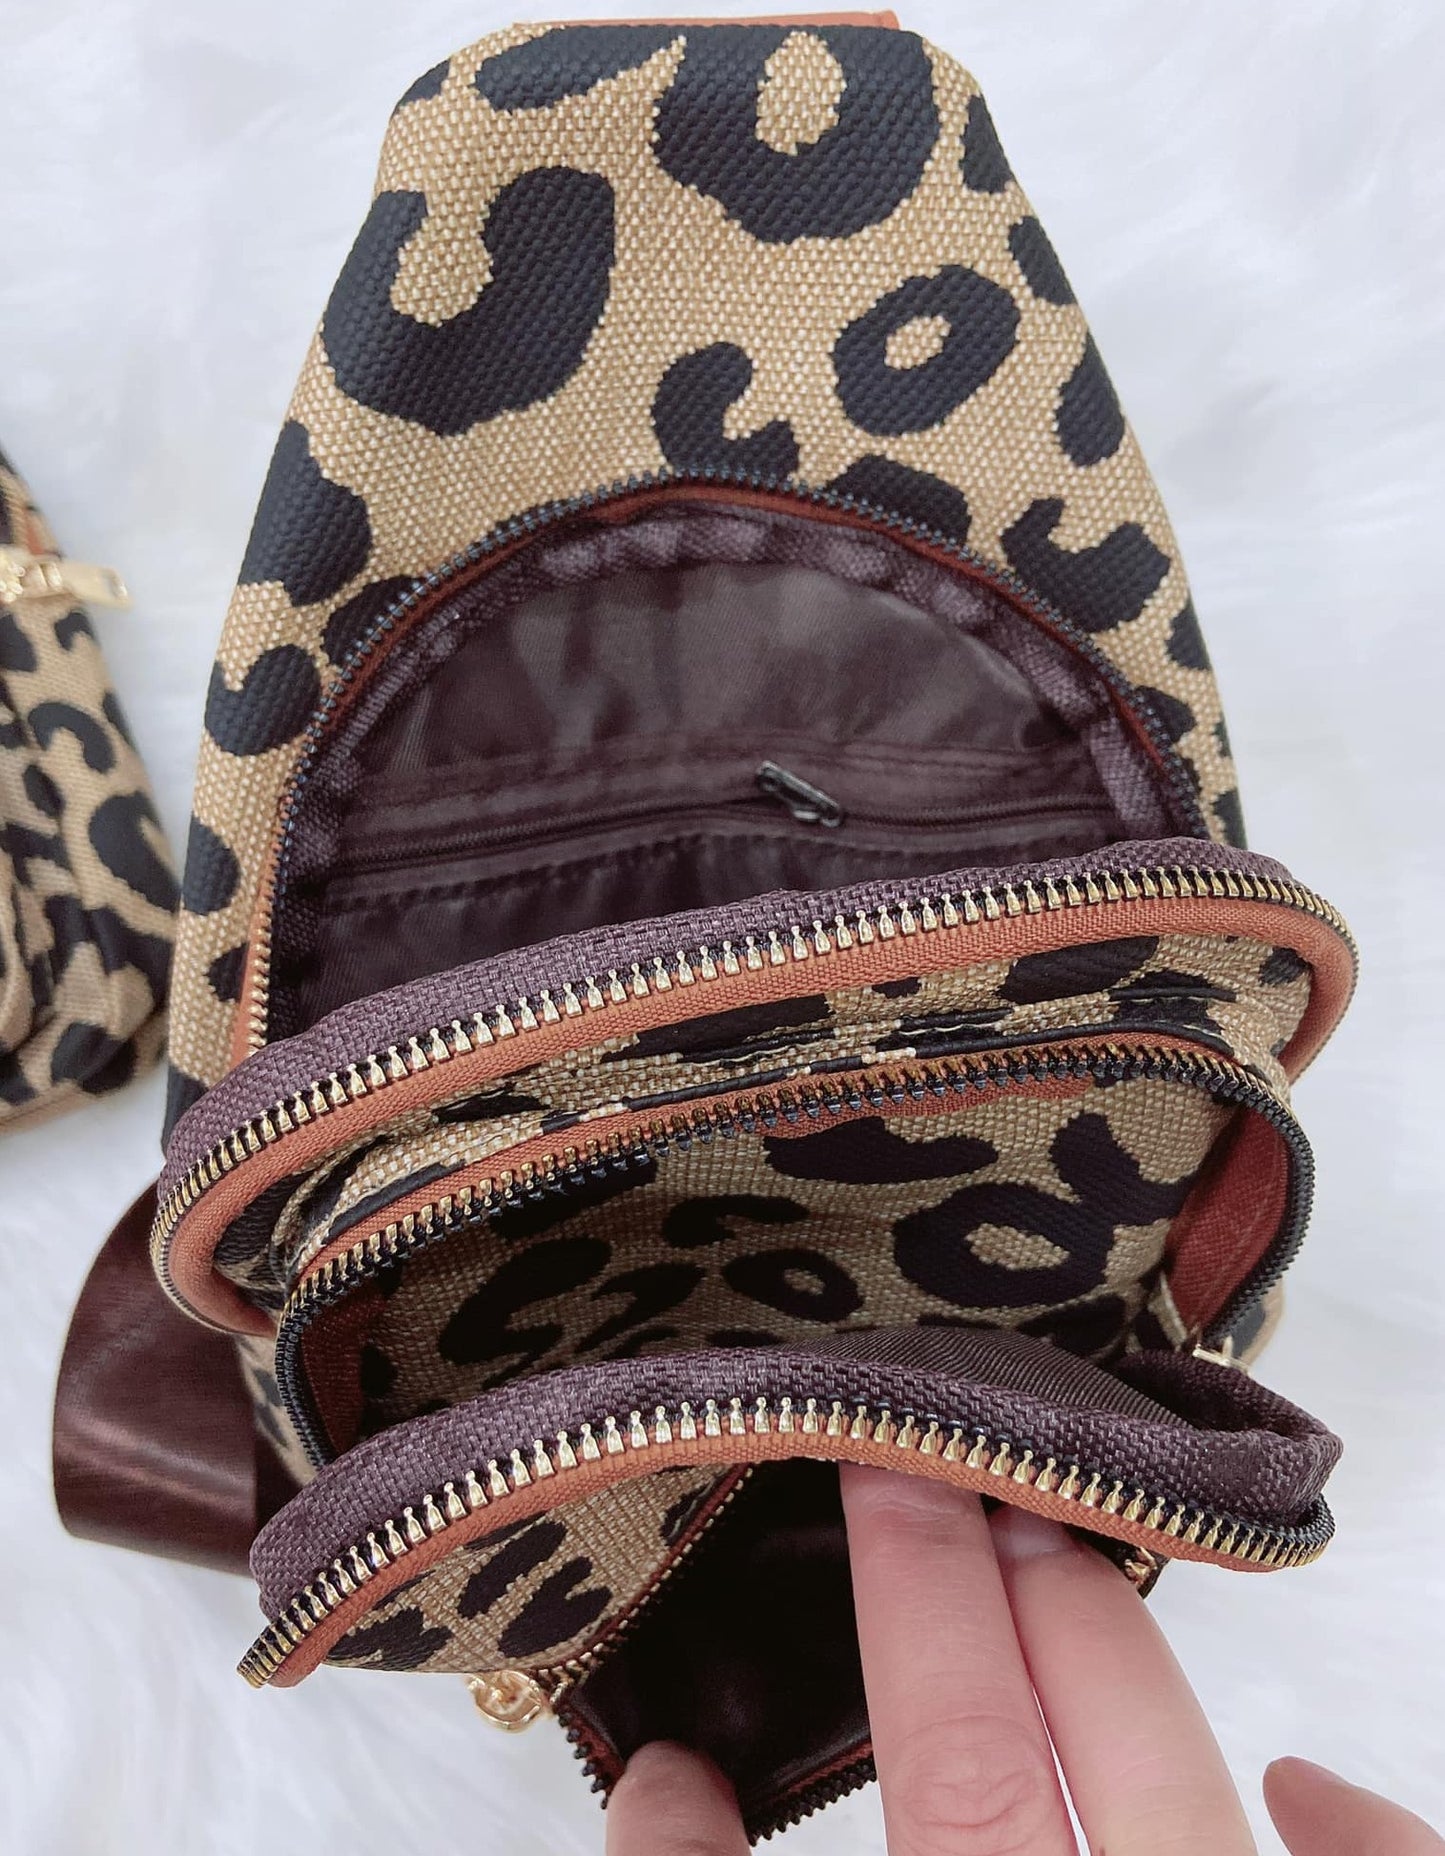 Leopard Sling Bag Preorder